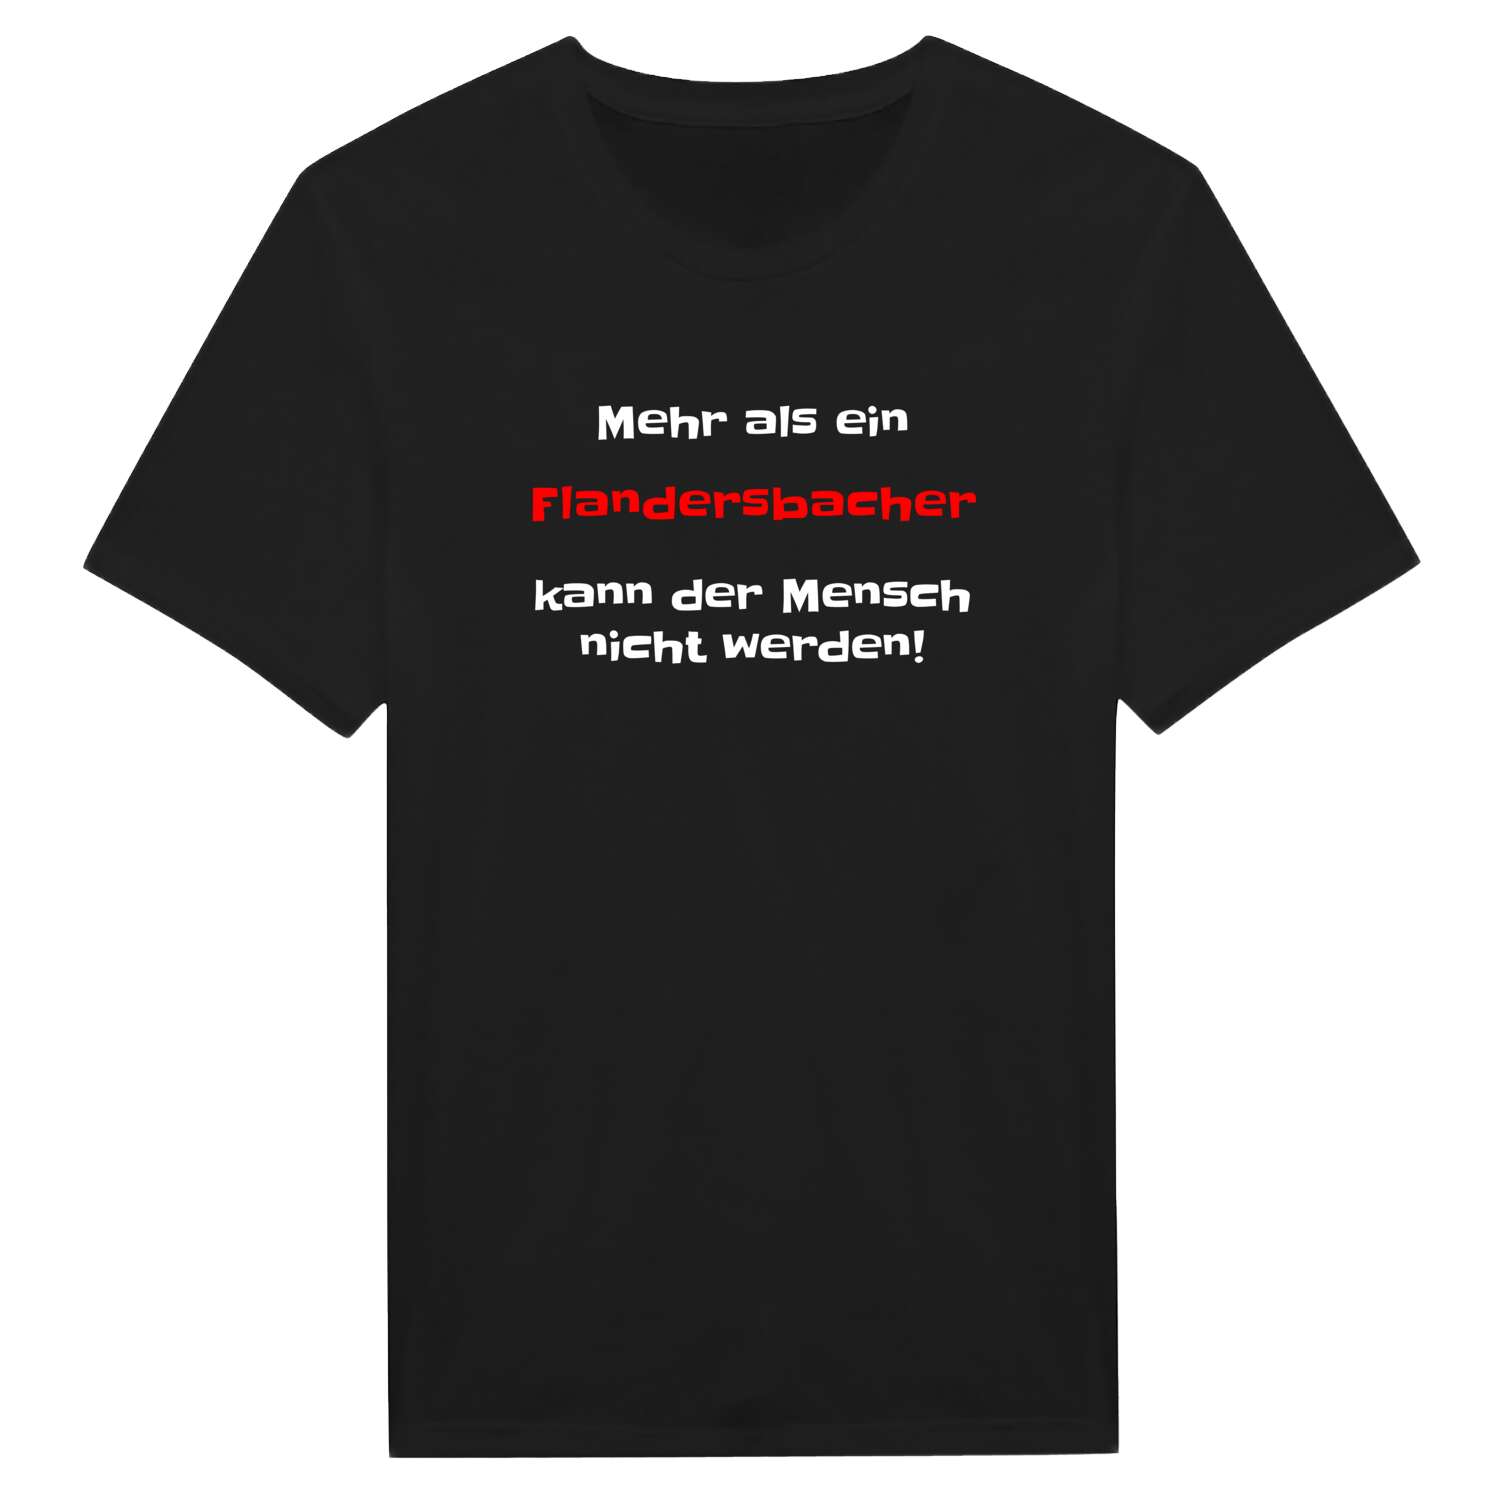 Flandersbach T-Shirt »Mehr als ein«